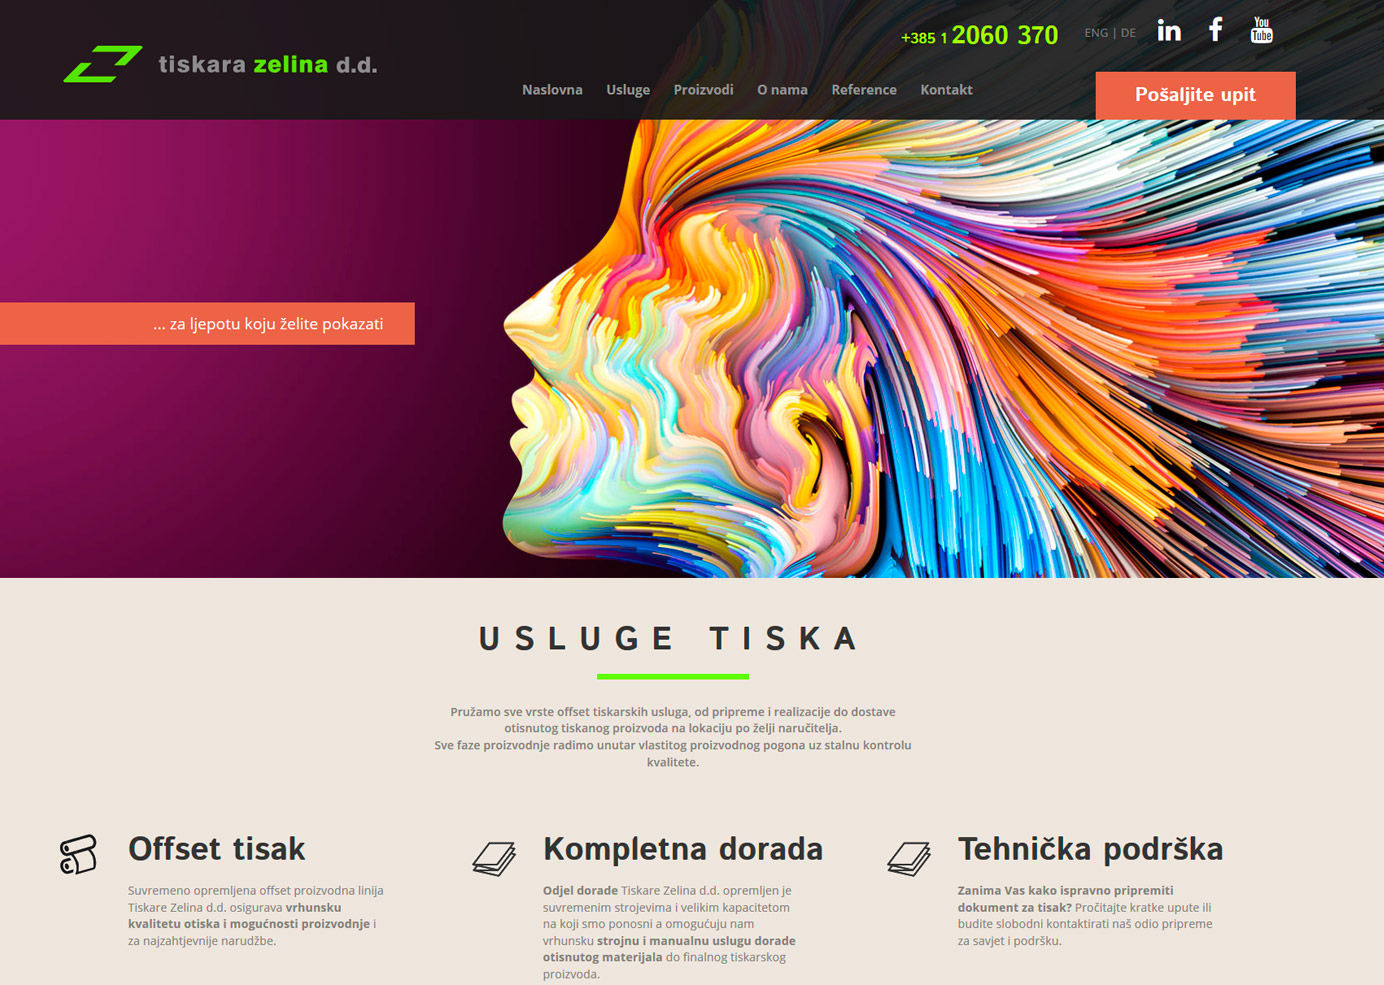 TISKARA ZELINA / Herstellung reaktions website | BERNARDIĆ STUDIO